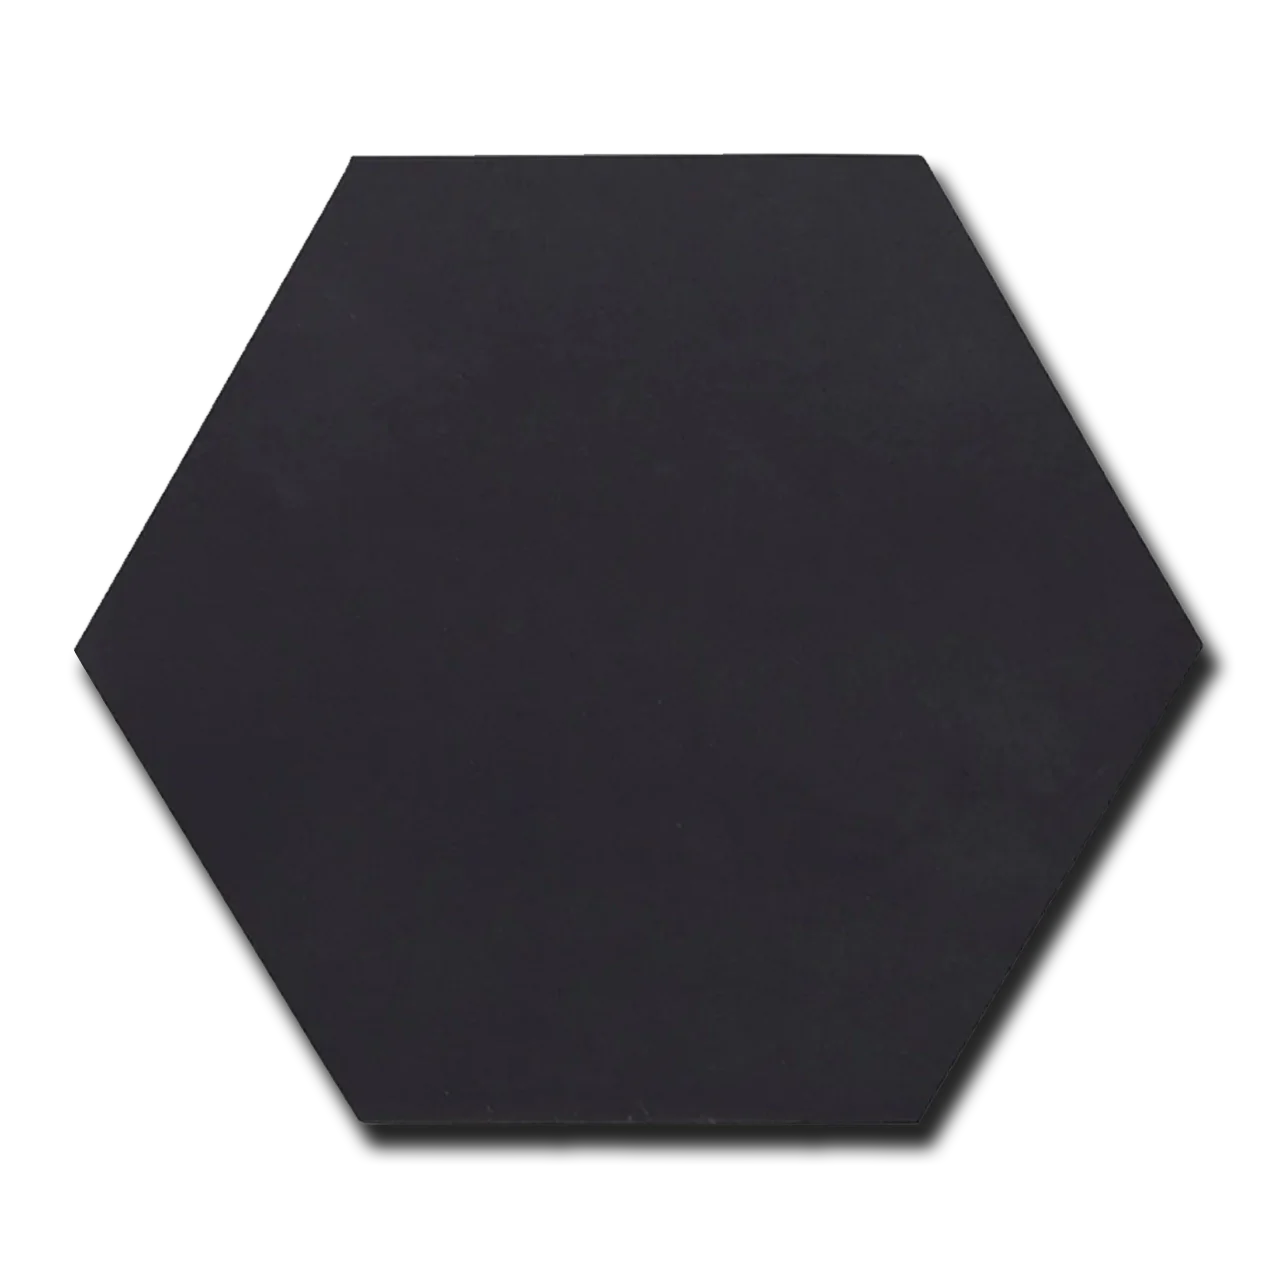 Black basalt 10 10 hexagon honed